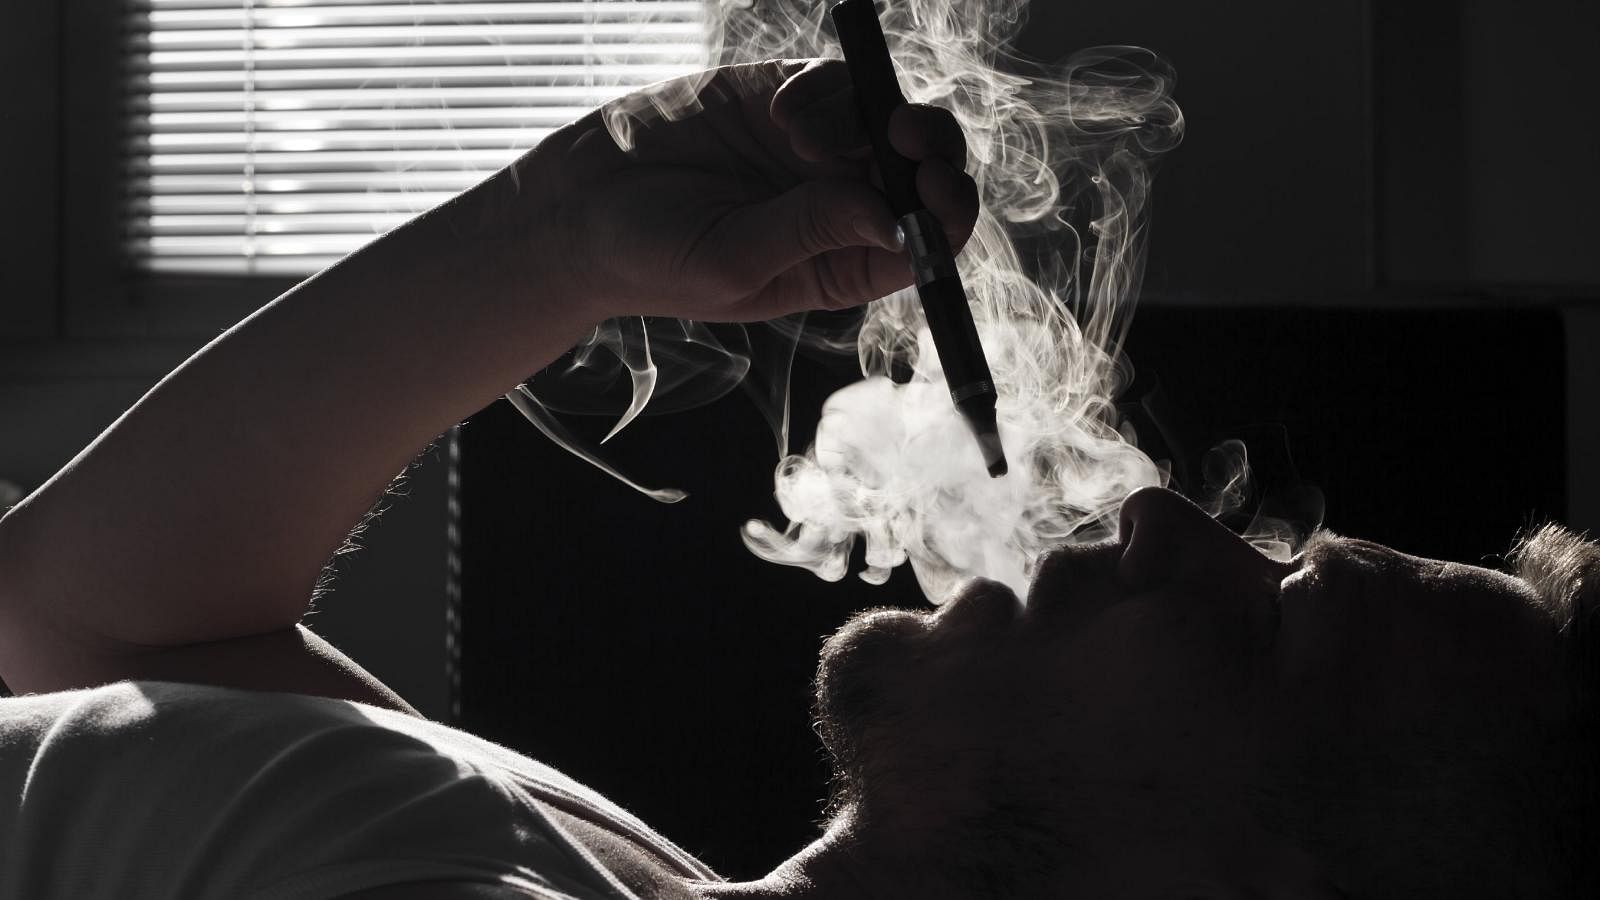 ई-सिगरेट को लेकर बहस के बीच धुआं ही धुआं है और कुछ कड़वी सच्चाइयां भी हैं.